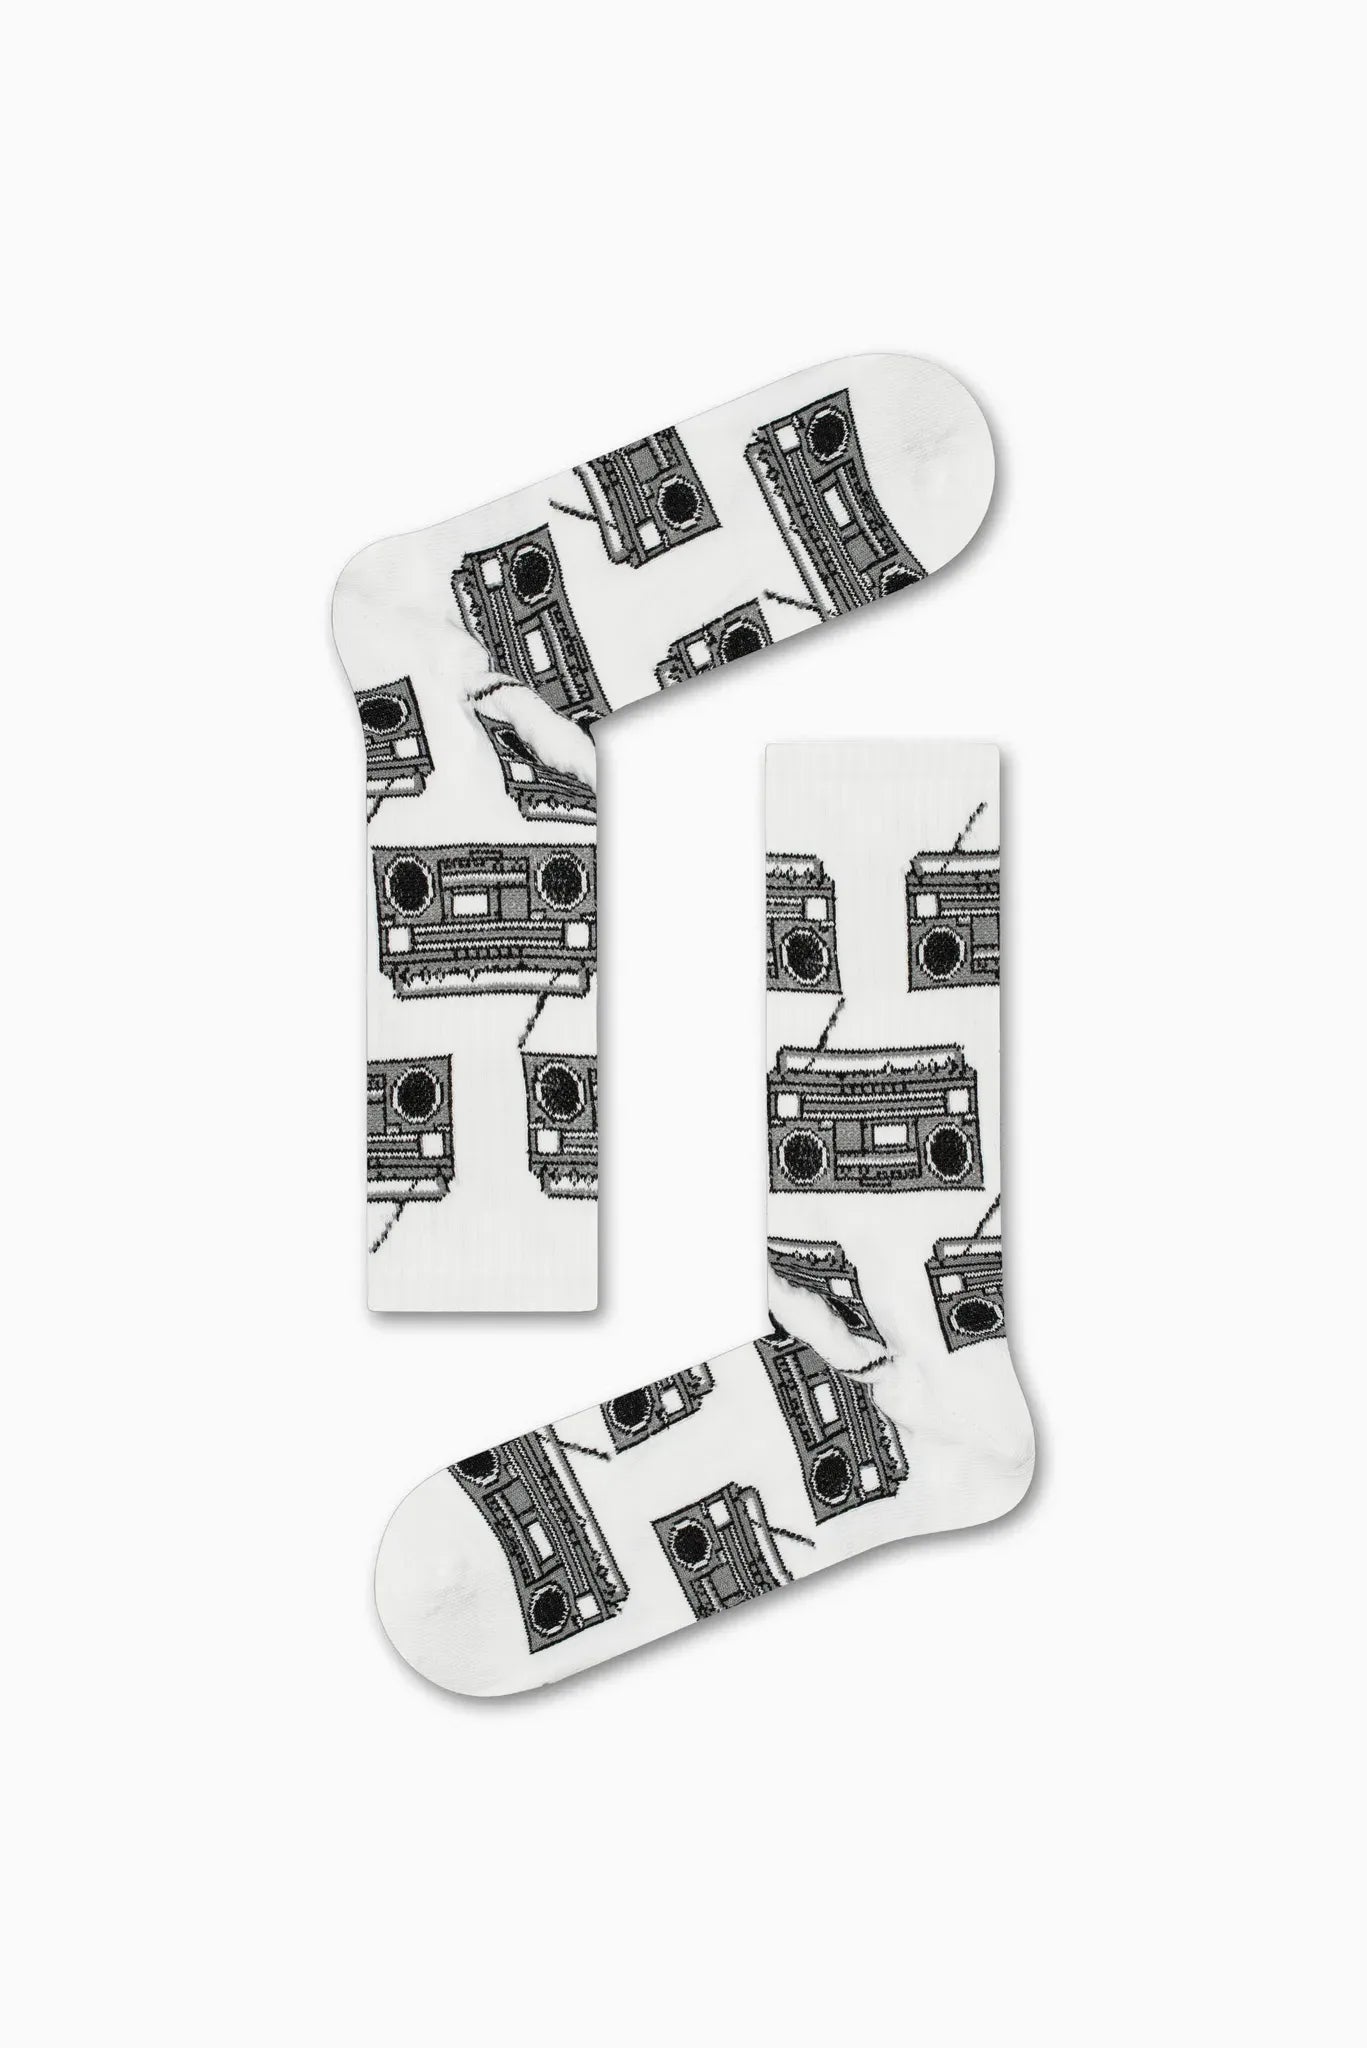 Κάλτσα χωρίς ραφές, με σχέδιο Cassetophone